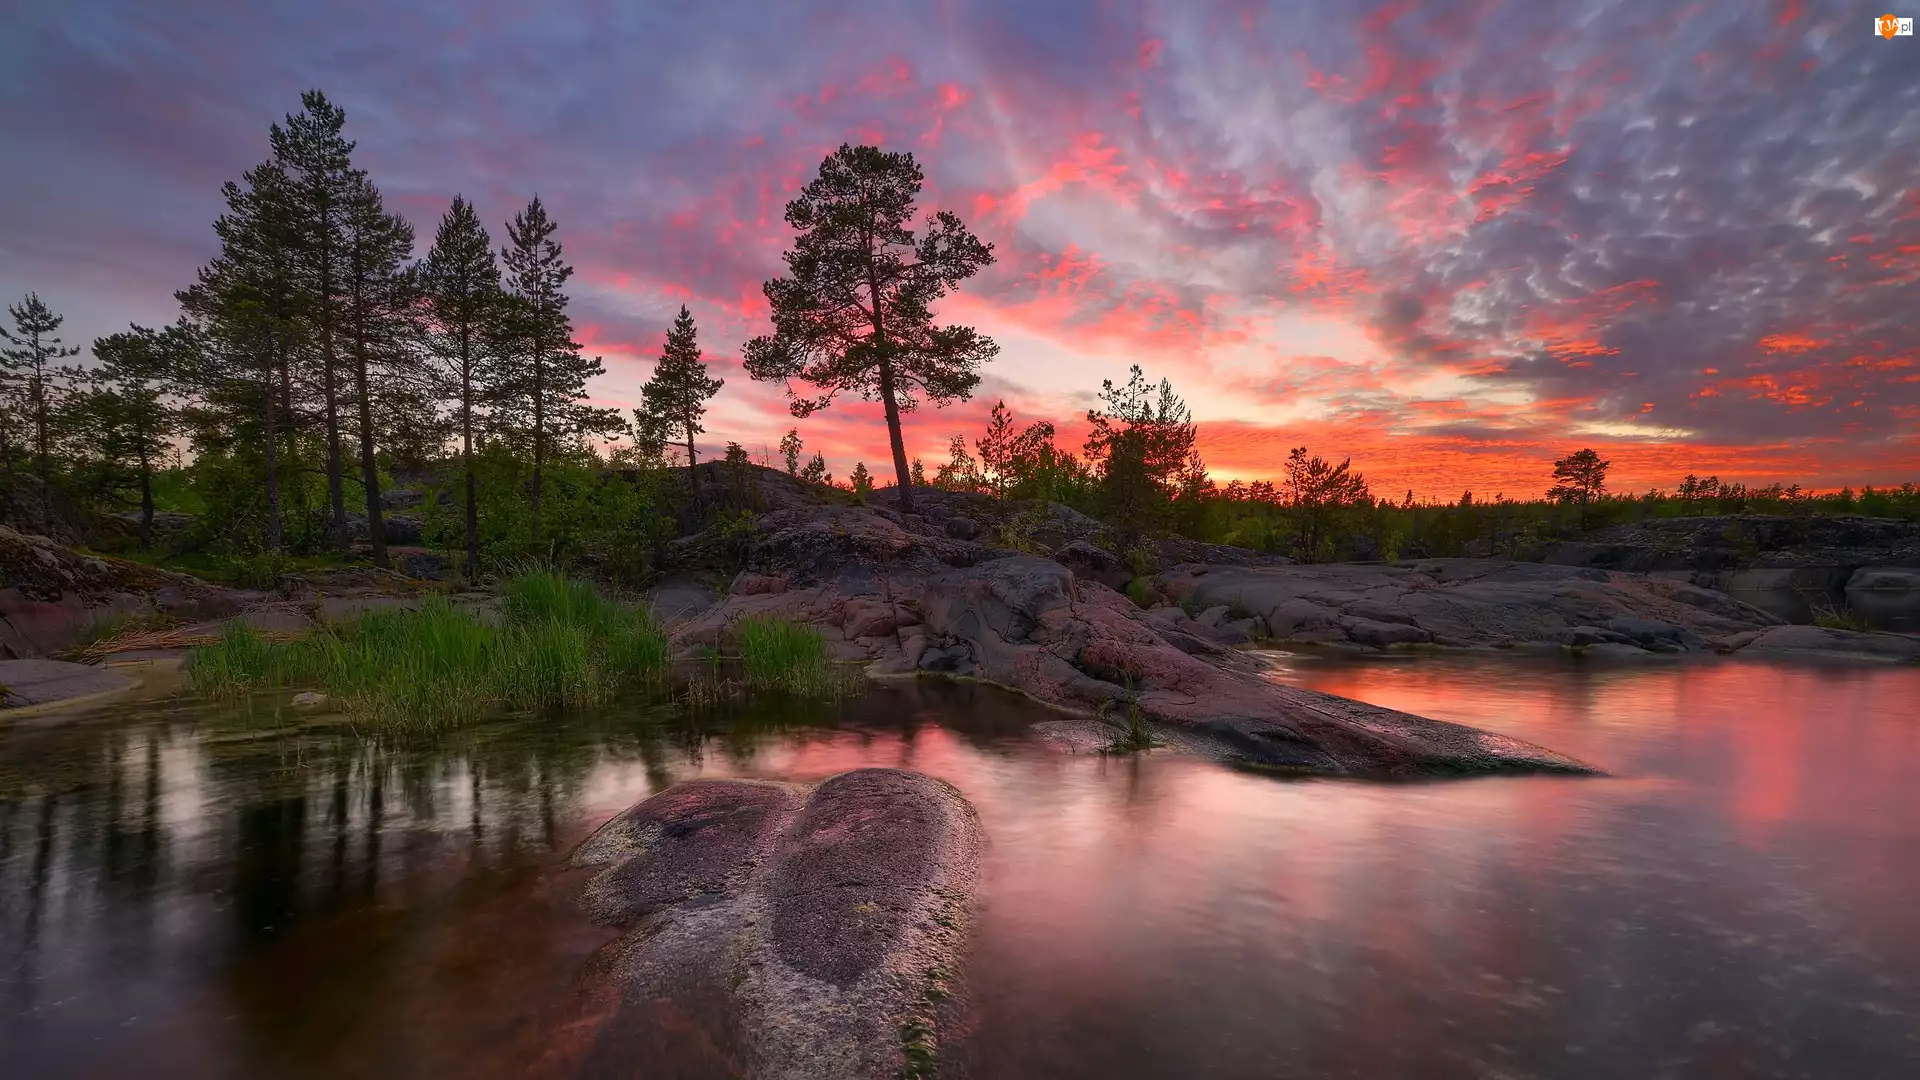 Rosja, Drzewa, Karelia, Chmury, Zachód słońca, Skały, Kolorowe, Jezioro Ładoga, Niebo